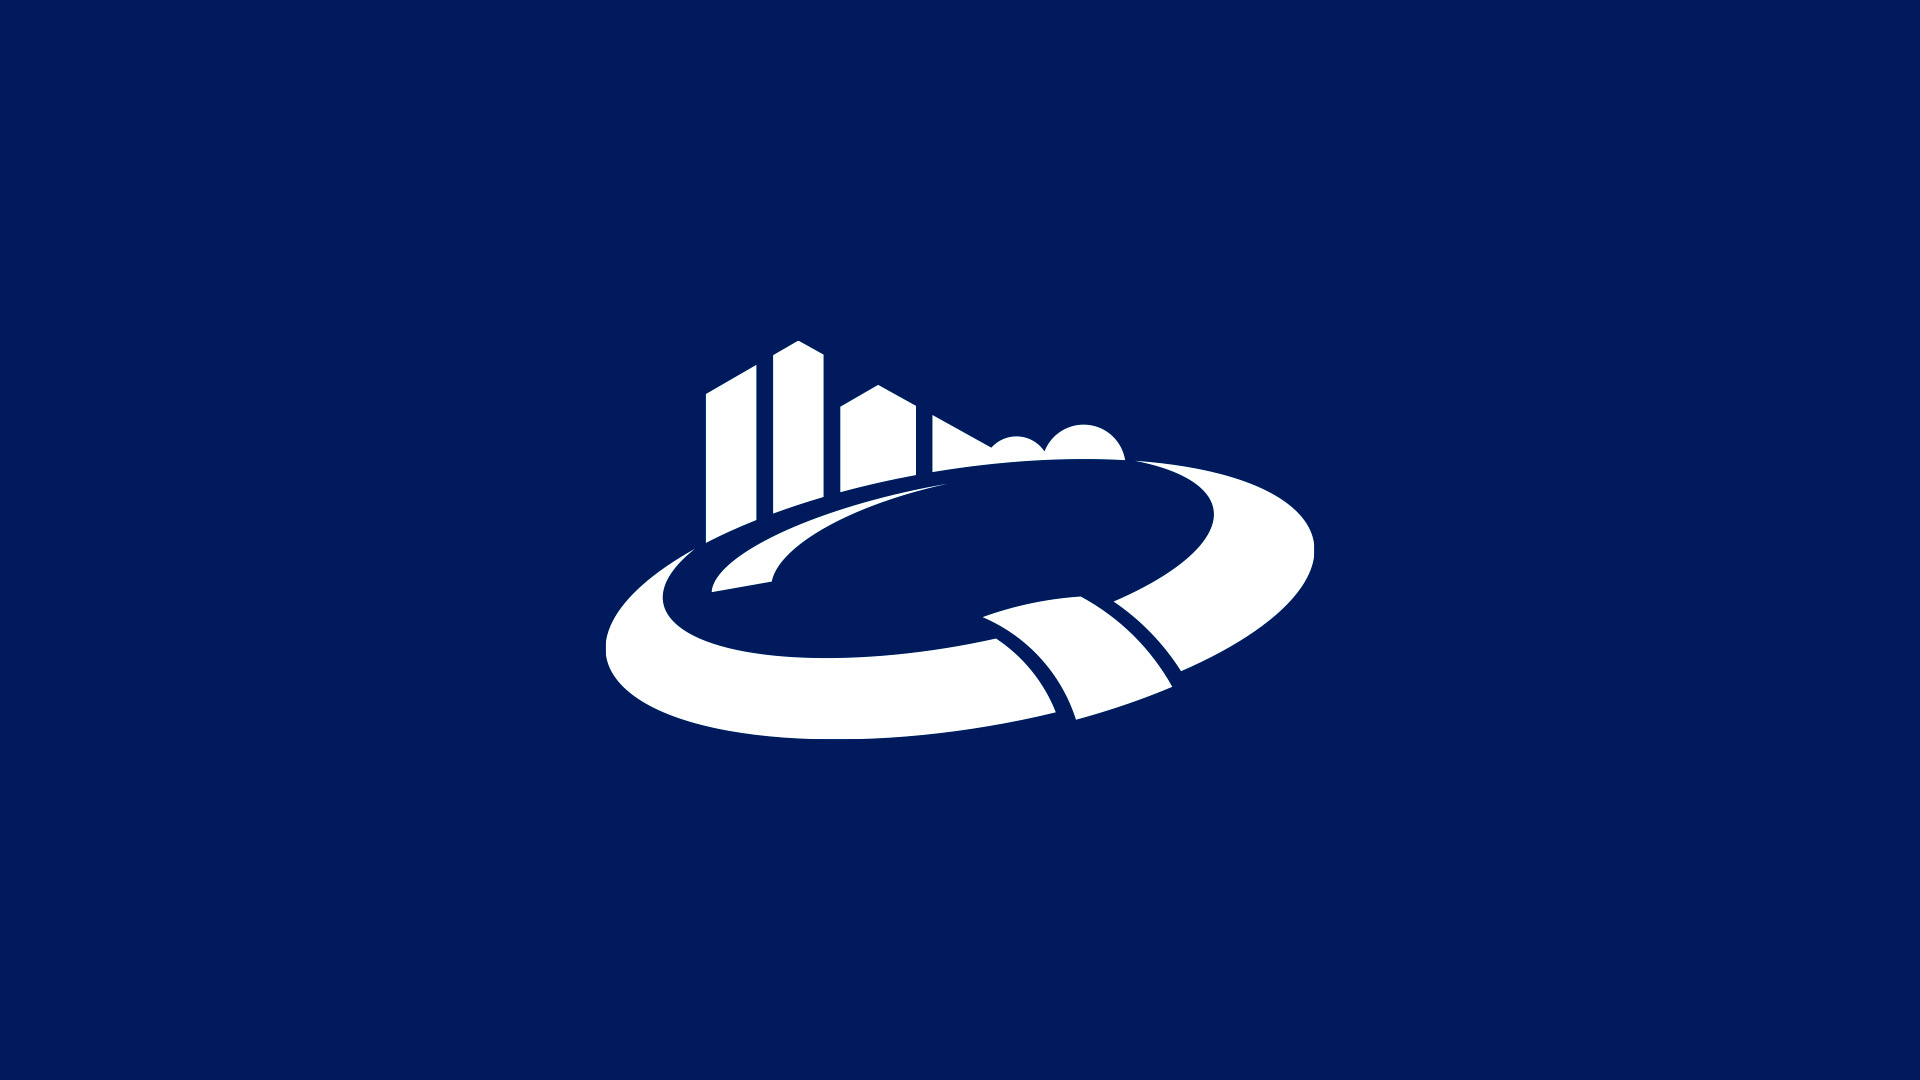 Het Bouwend Nederland logo in wit op een donkerblauwe achtergrond